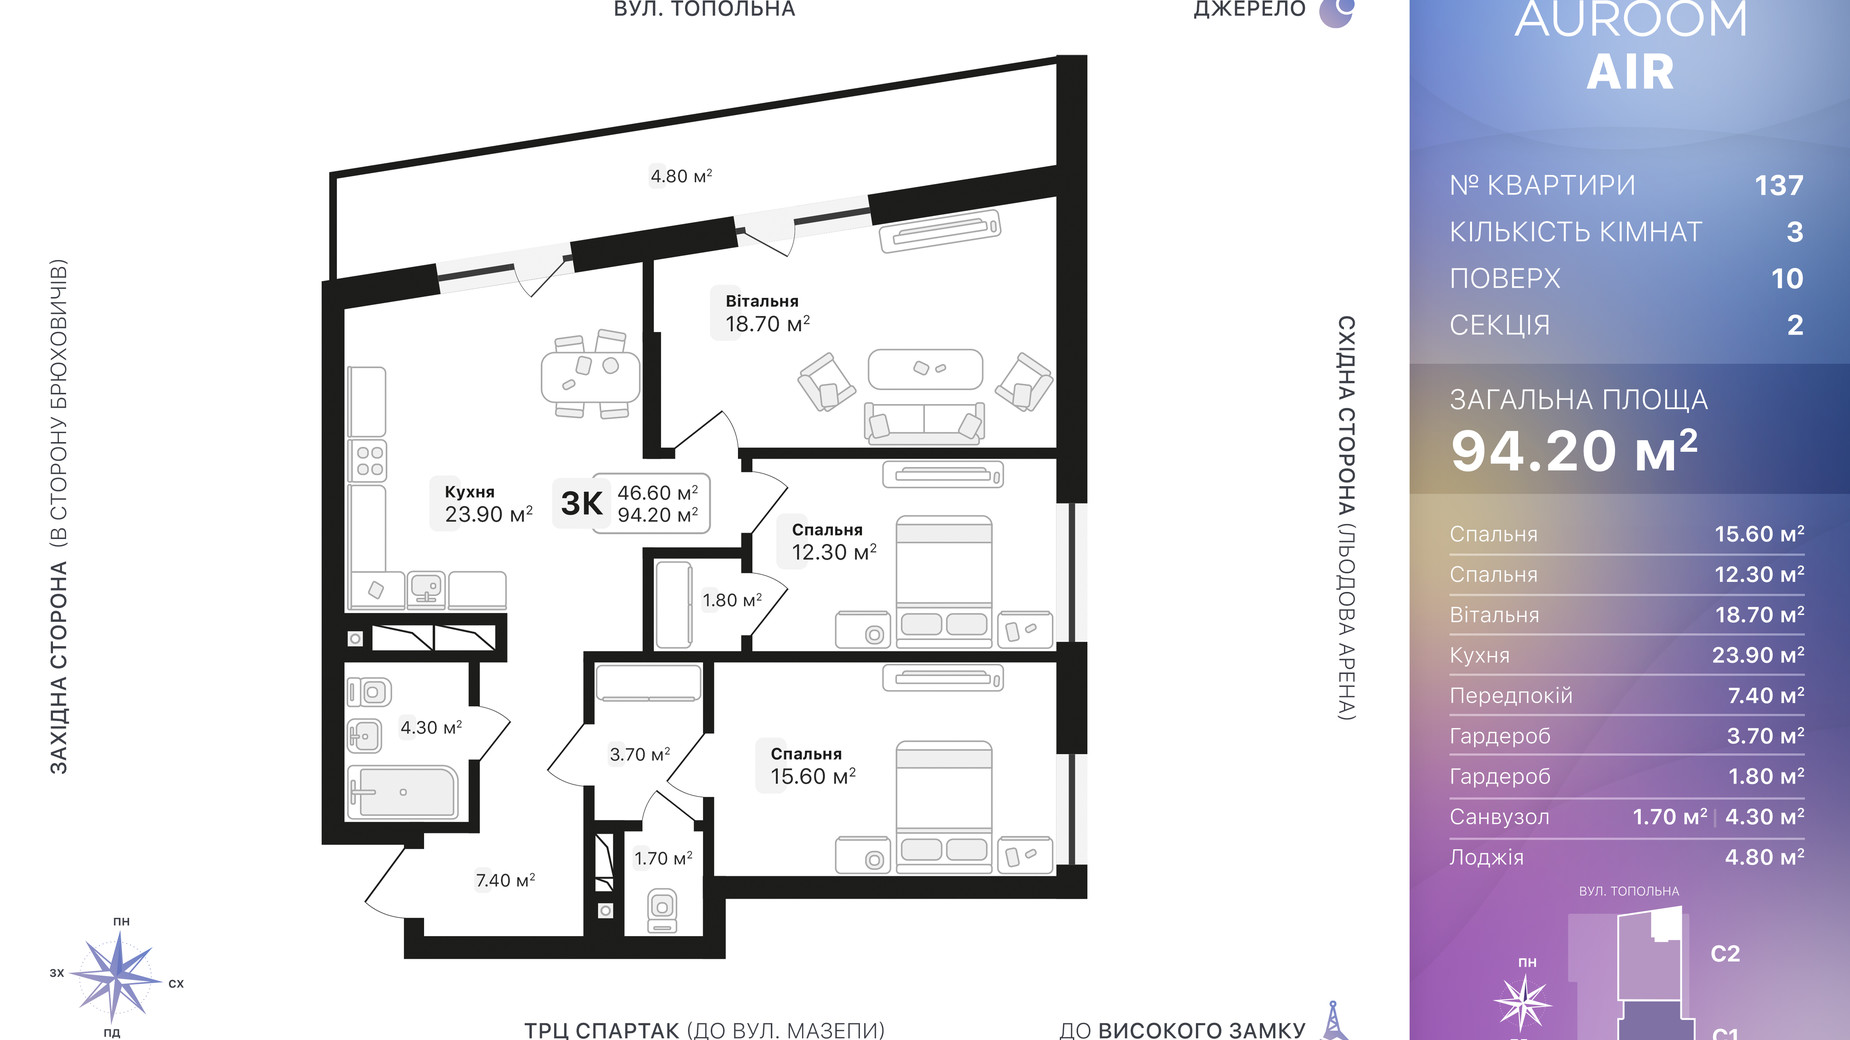 Планировка 3-комнатной квартиры в ЖК Auroom Air 94.2 м², фото 552403